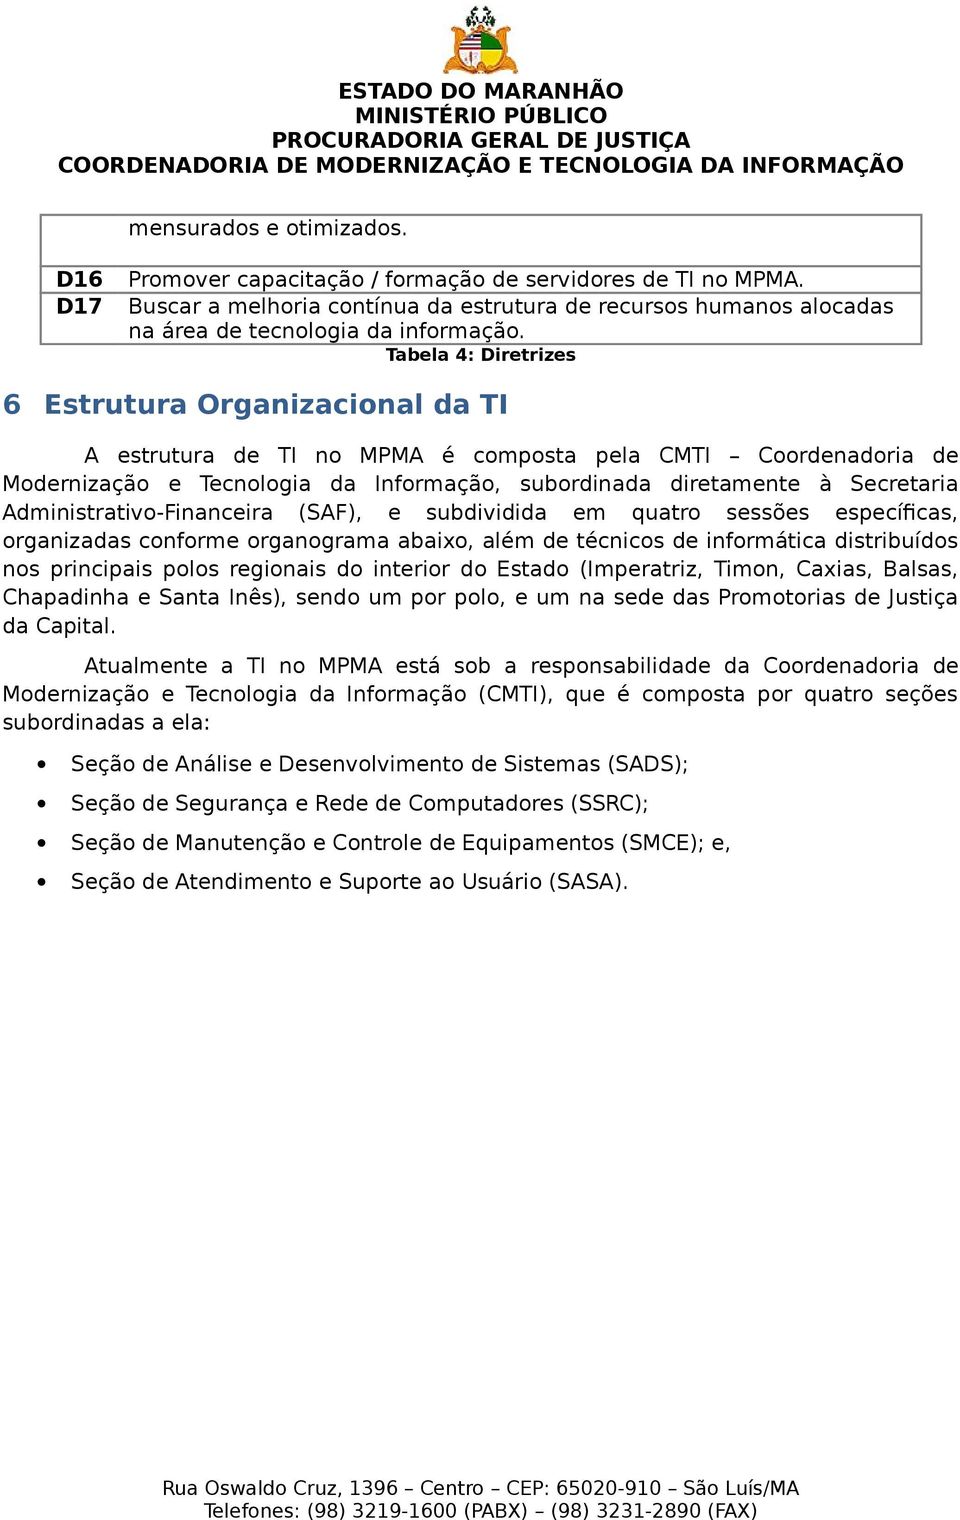 Administrativo-Financeira (SAF), e subdividida em quatro sessões específicas, organizadas conforme organograma abaixo, além de técnicos de informática distribuídos nos principais polos regionais do